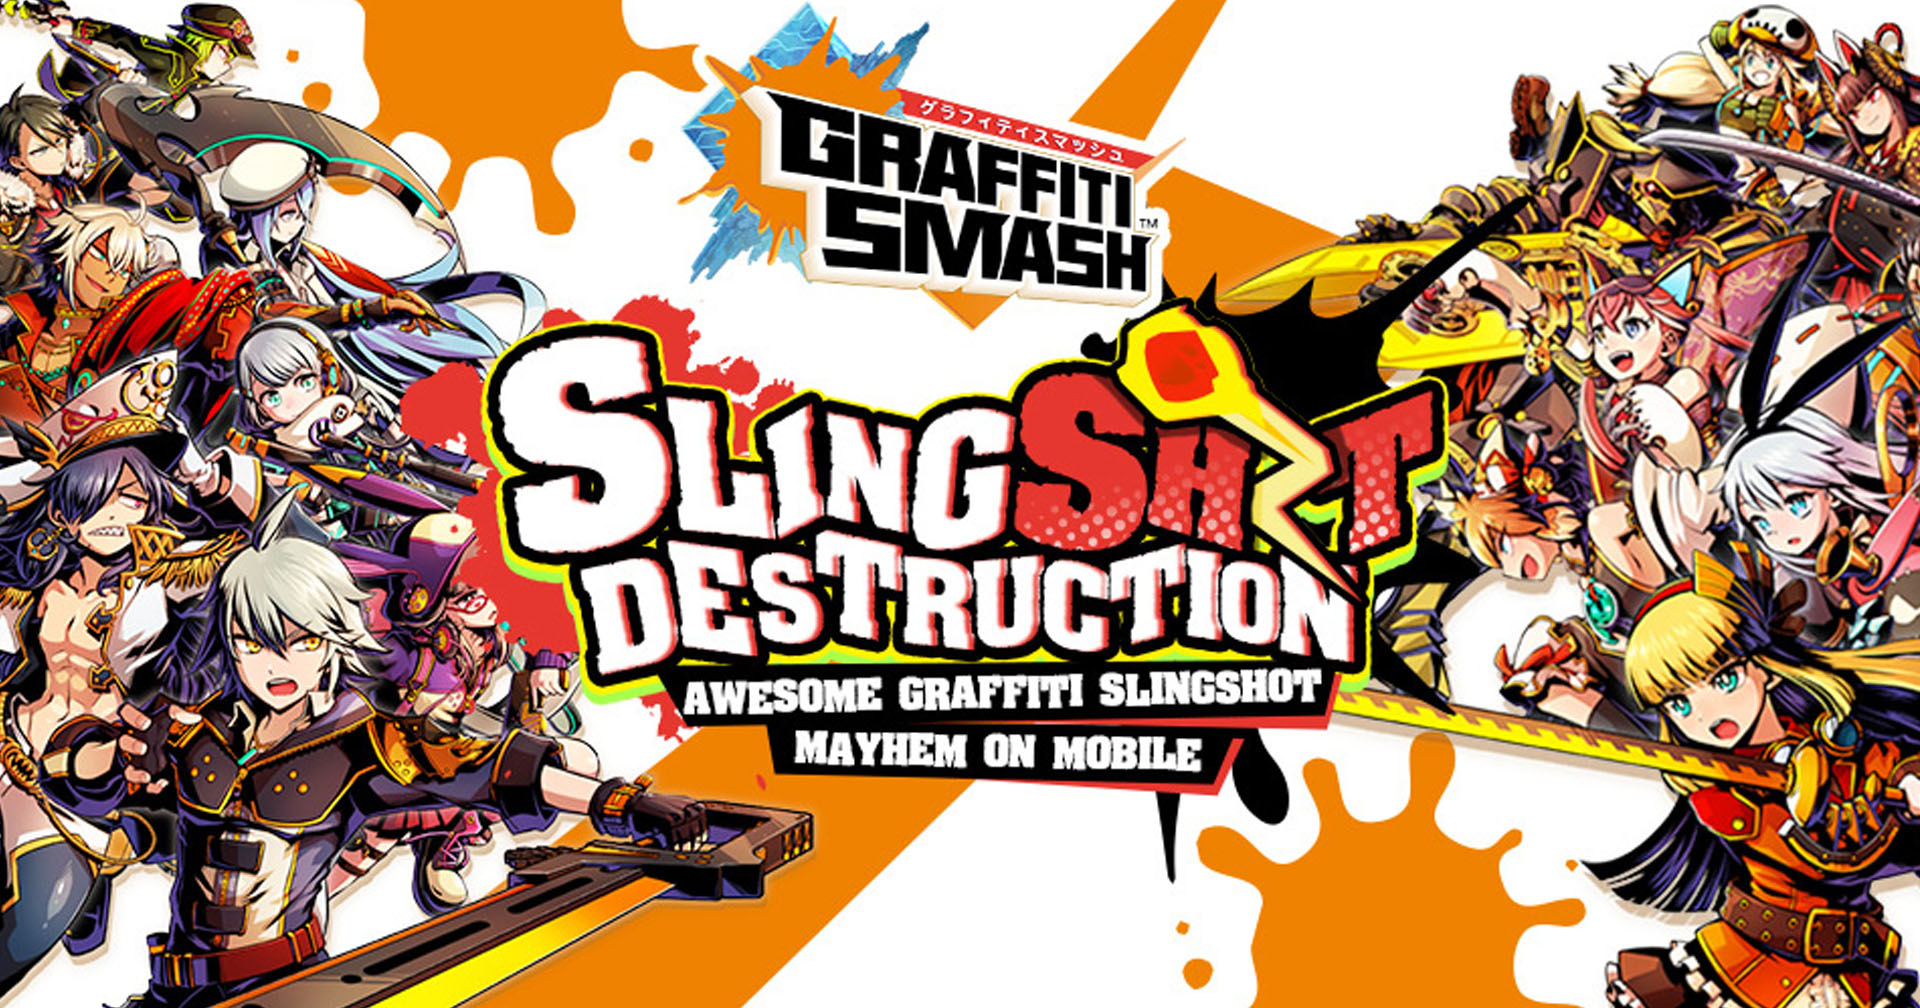 [รีวิวเกม] Graffiti Smash เกมแนว Slingshot RPG ที่มีกราฟฟิตี้สุดแนว และภาพแบบสตรีทอาร์ต